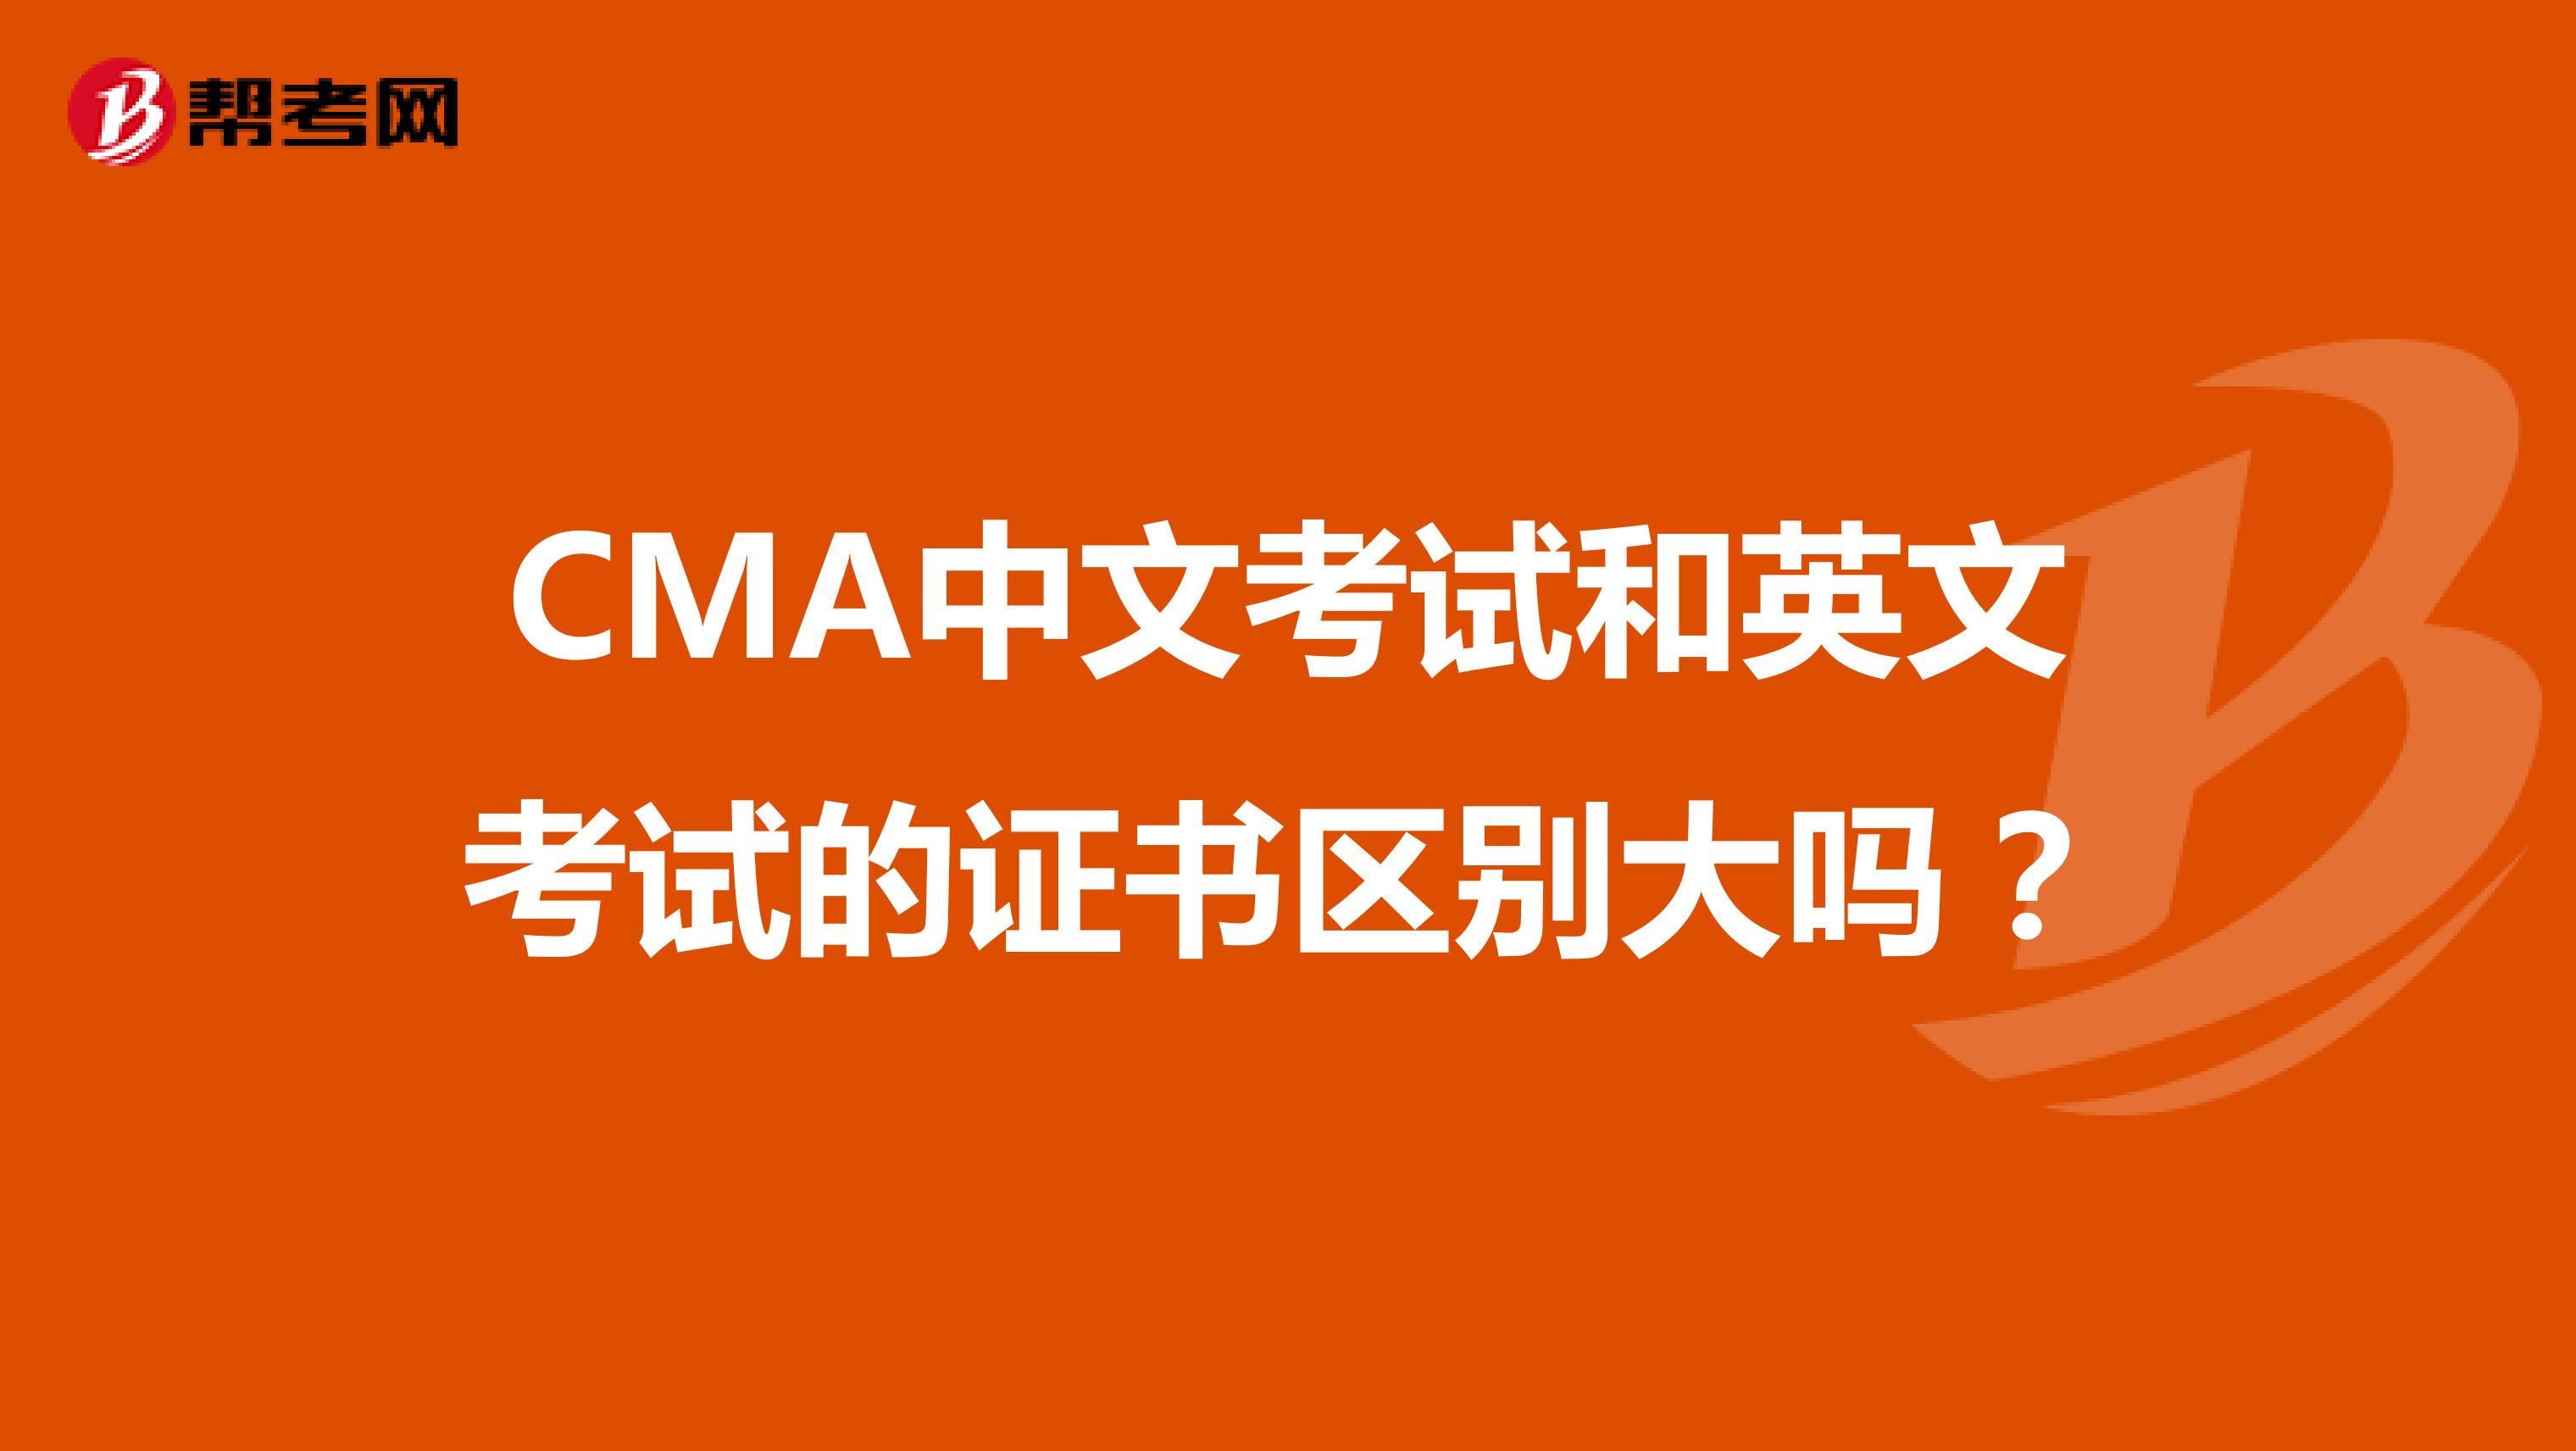 CMA中文考试和英文考试的证书区别大吗？